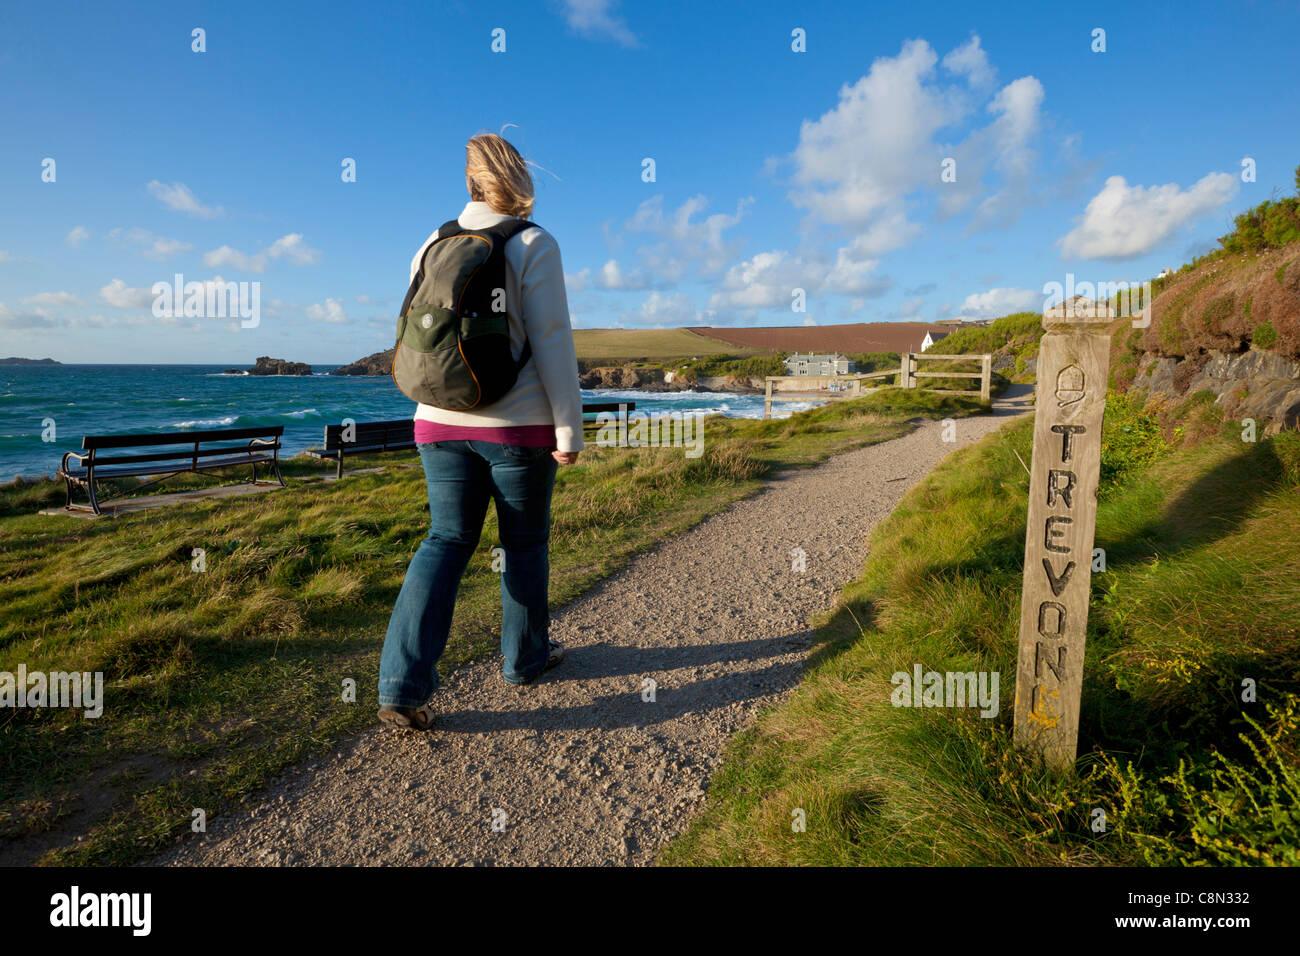 Il camminatore femmina sul sentiero costiero, estate, Newtrain Bay, Quies Bay, Cornwall Coast, Inghilterra, GB, Regno Unito e Unione europea, Europa Foto Stock